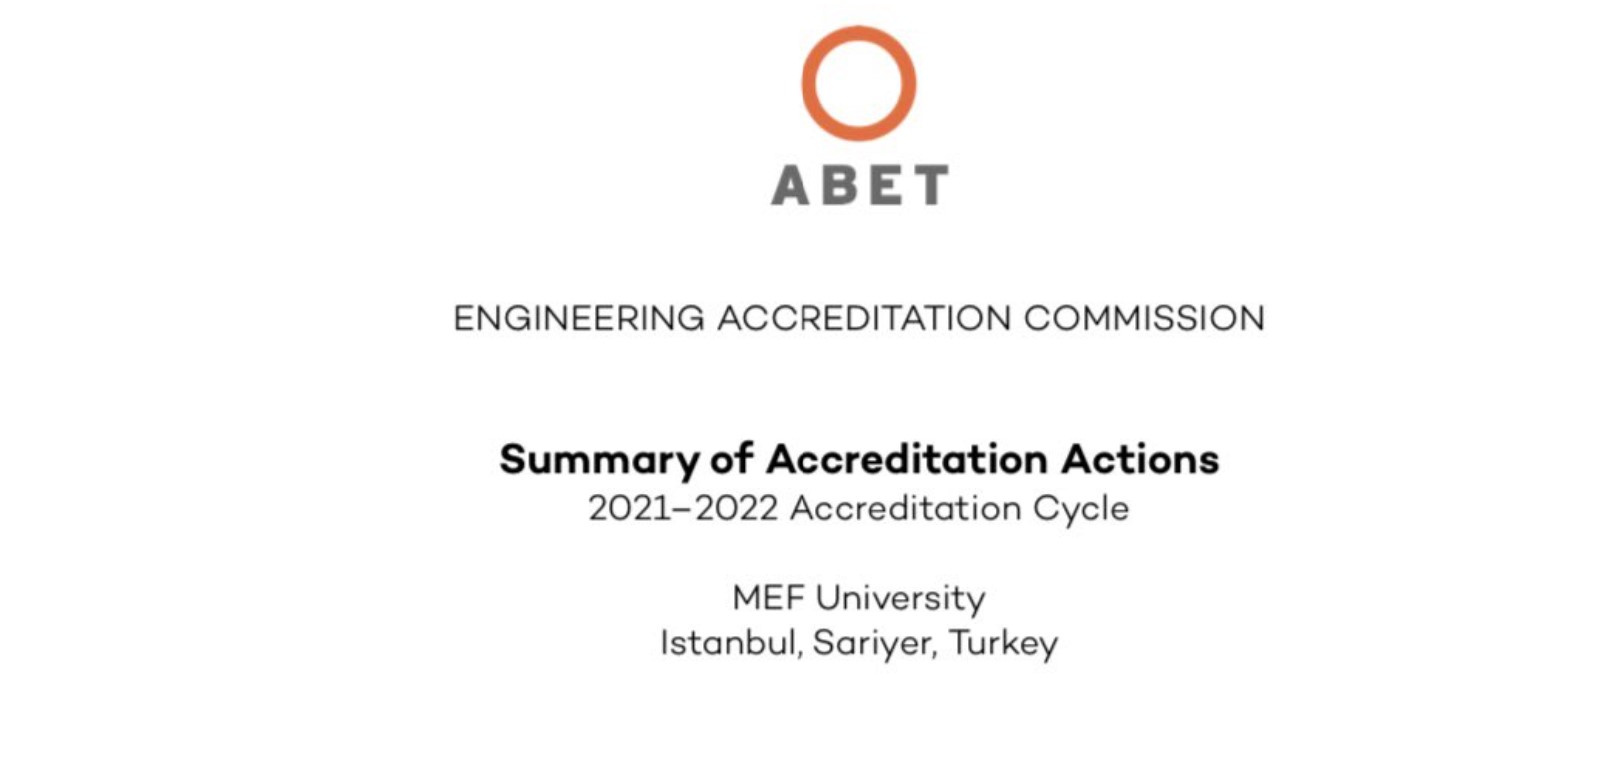 MEF Üniversitesinin Hangi Programları Akreditasyon Aldı